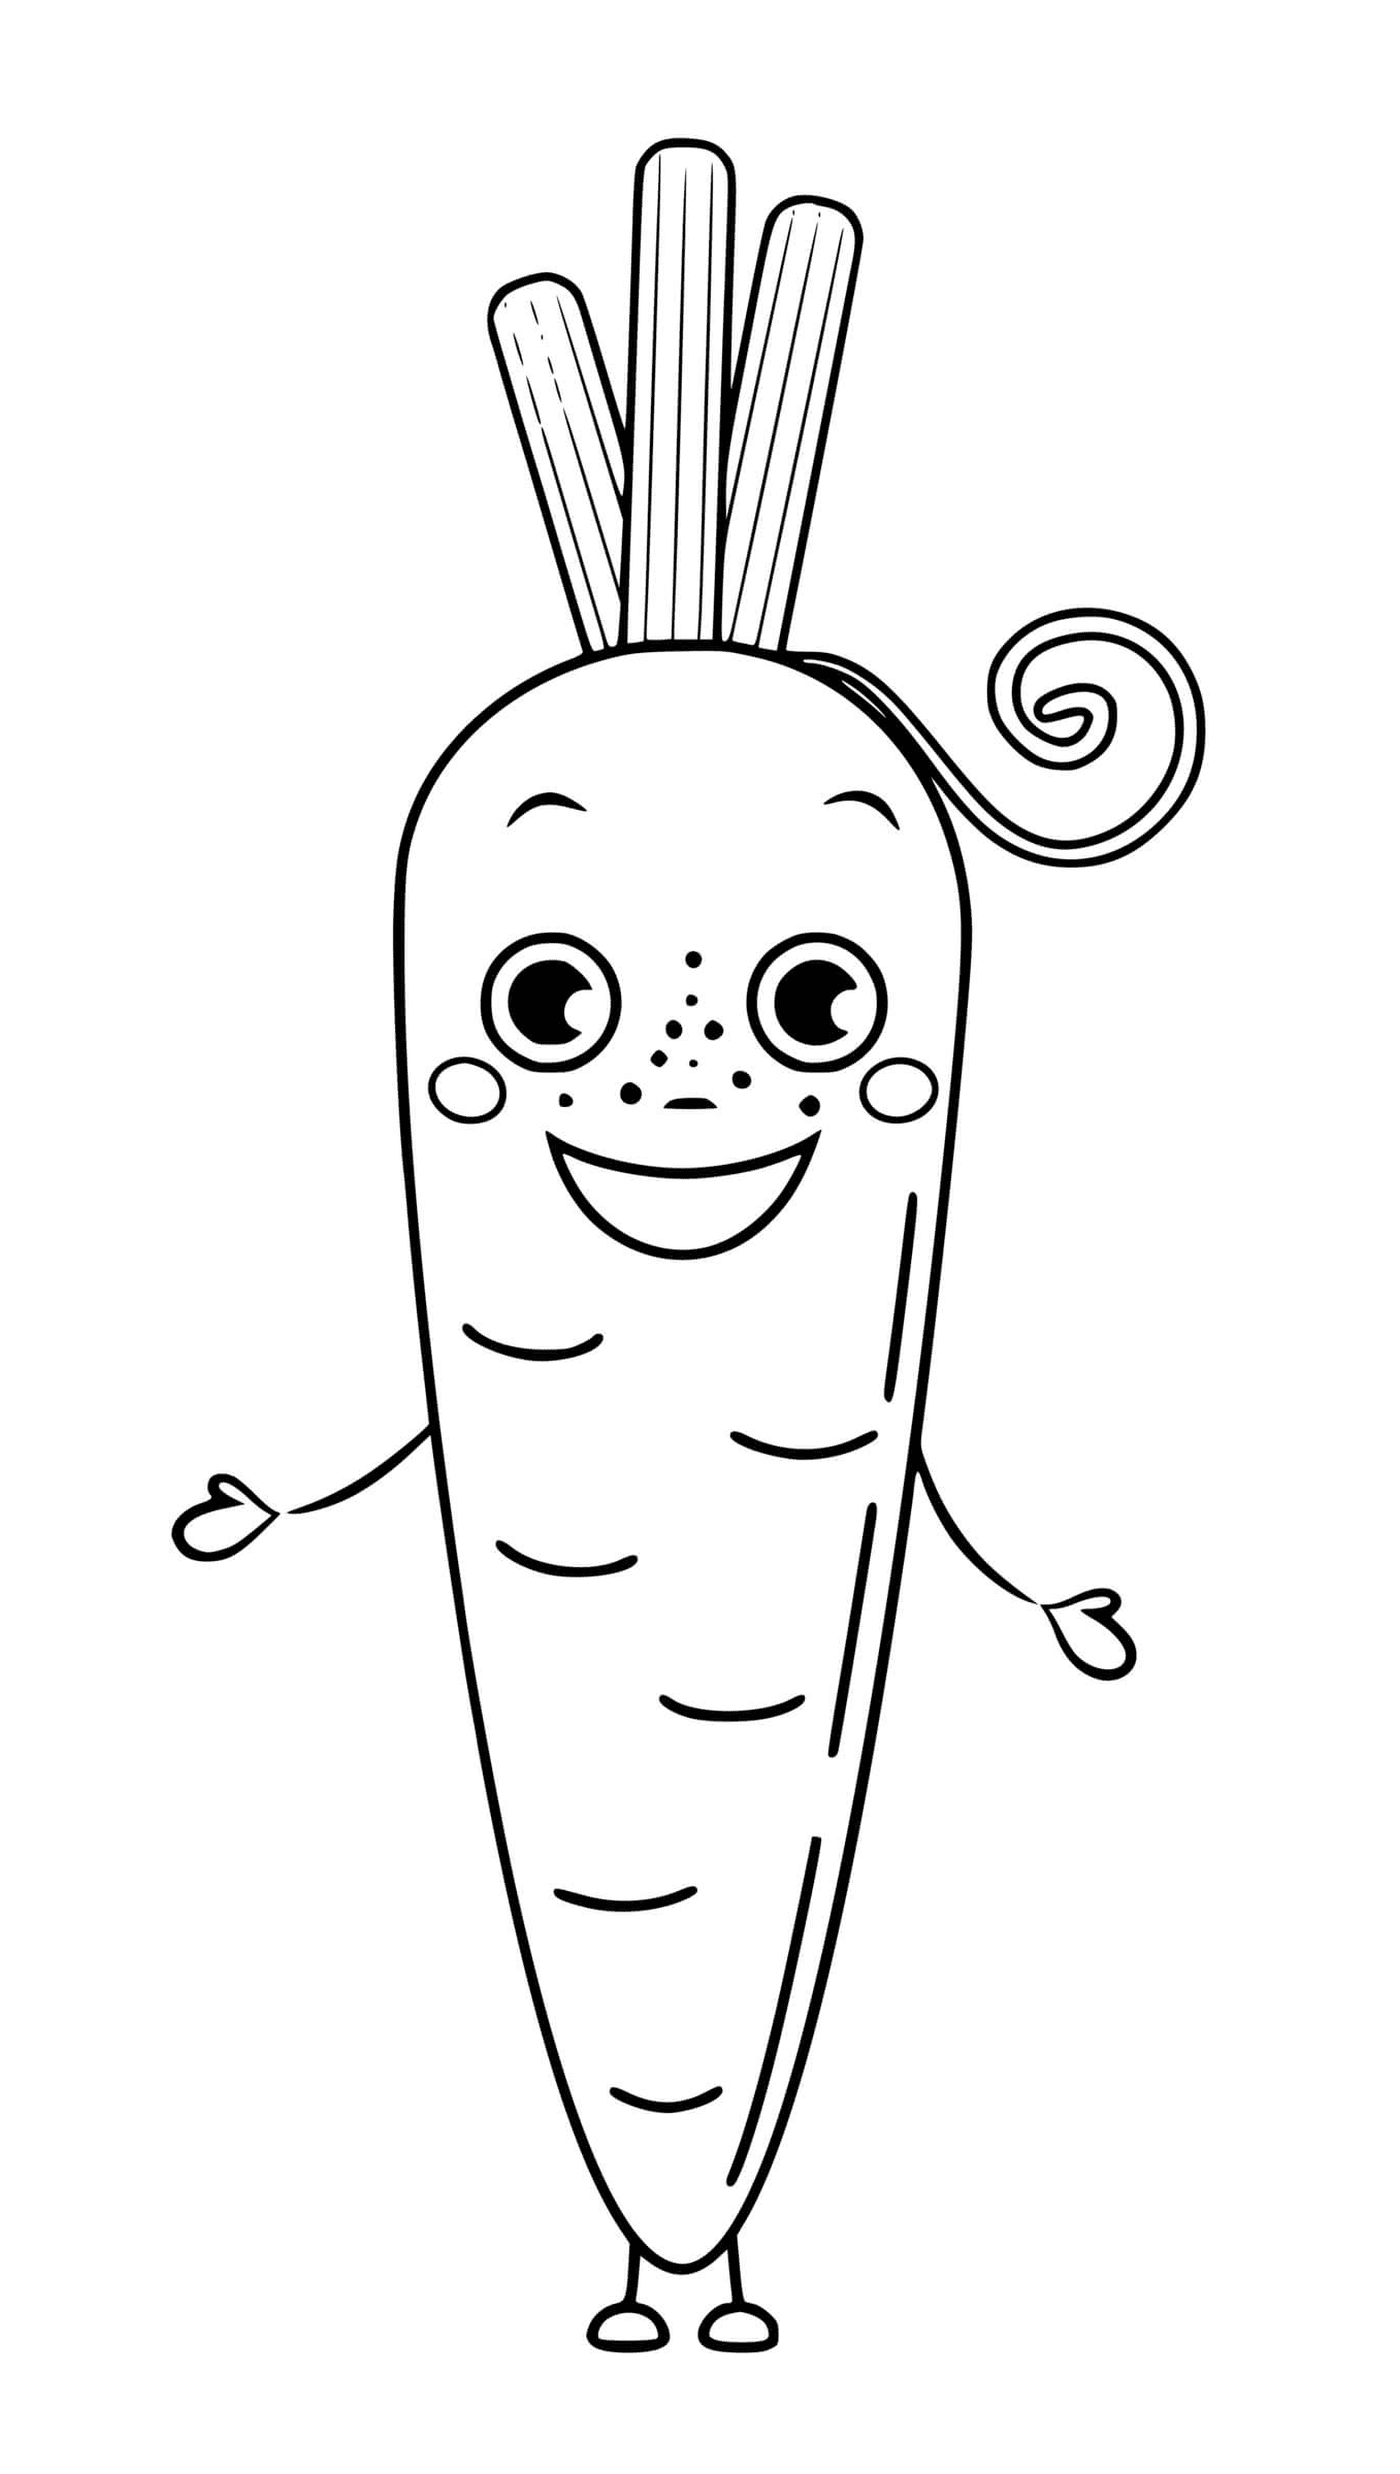  Carota vegetale con occhi e sorriso, una carota con una coda riccio 